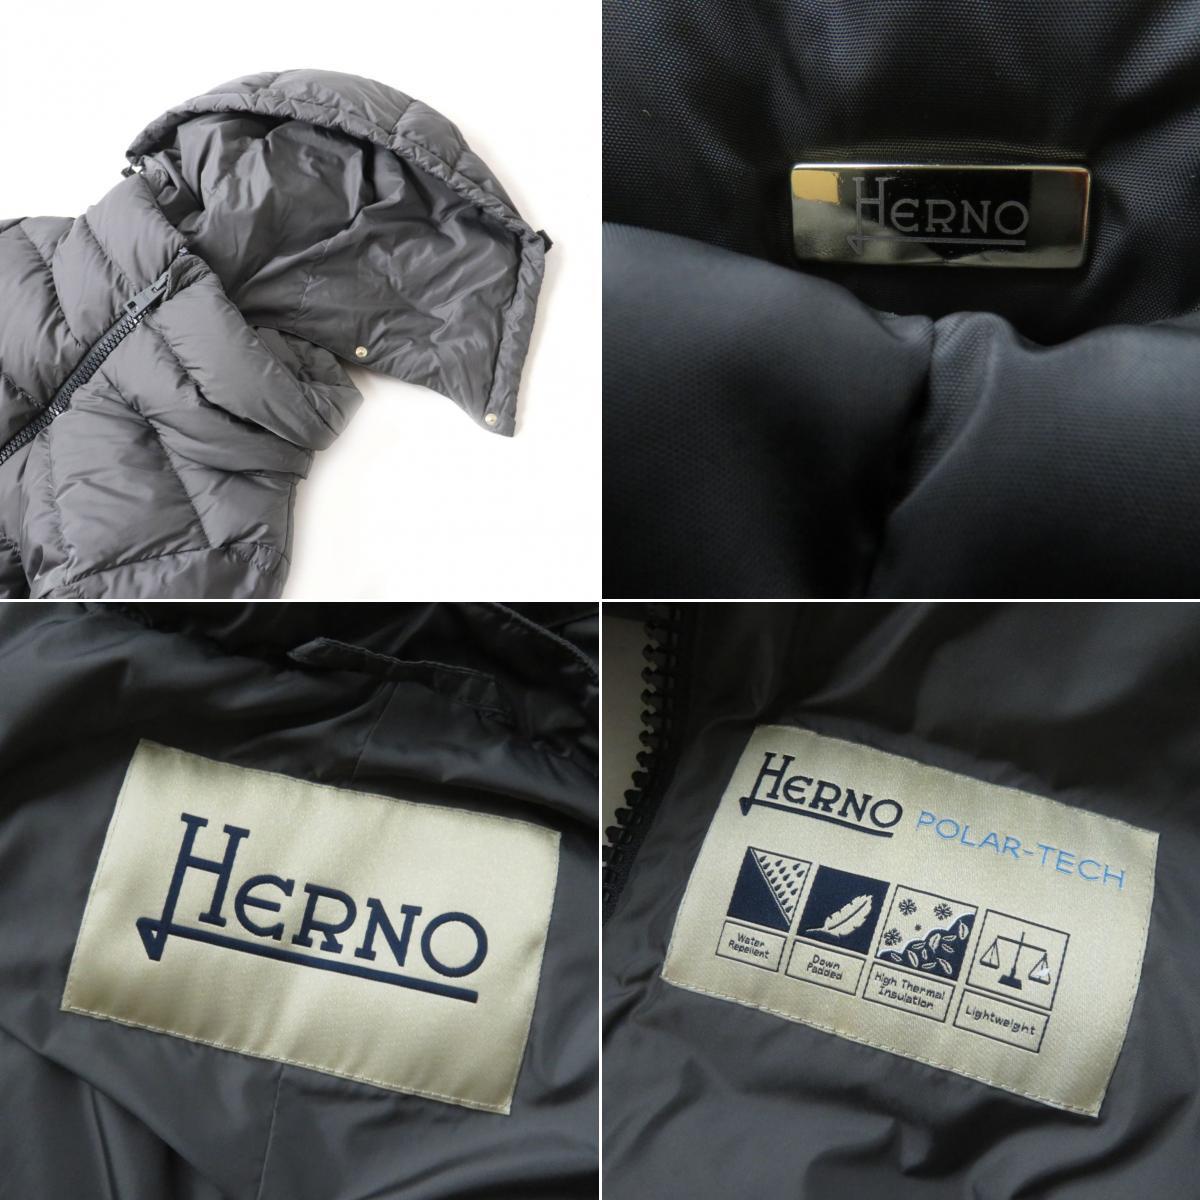  превосходный товар * стандартный товар 2021 год HERNO ад noPI0660D POLAR-TECH Logo металлические принадлежности * с капюшоном ZIP UP пуховик женский серый серый 40 простой *